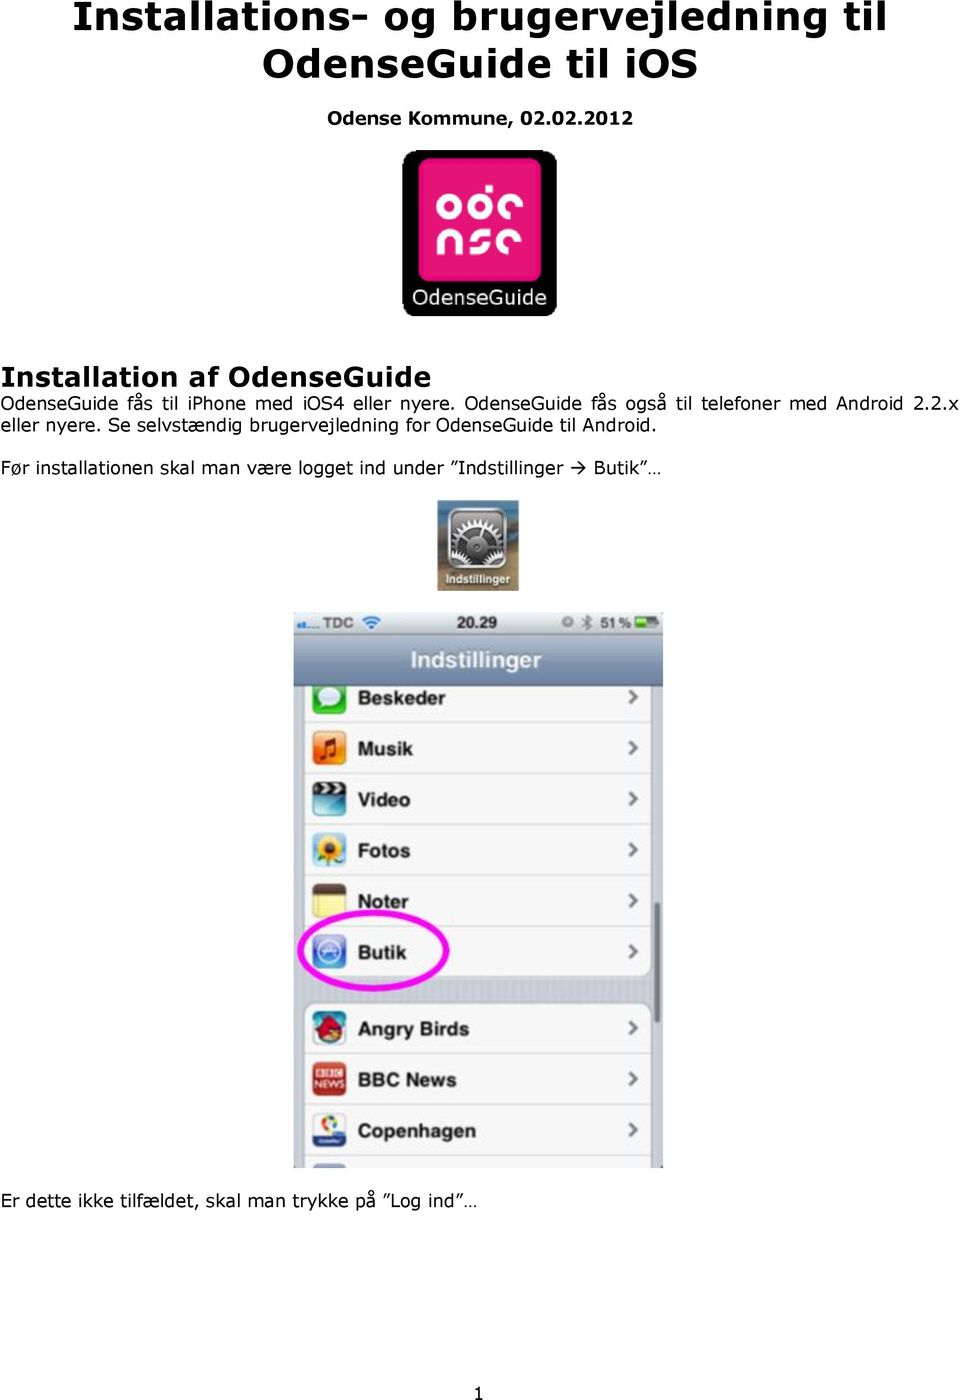 OdenseGuide fås også til telefoner med Android 2.2.x eller nyere.